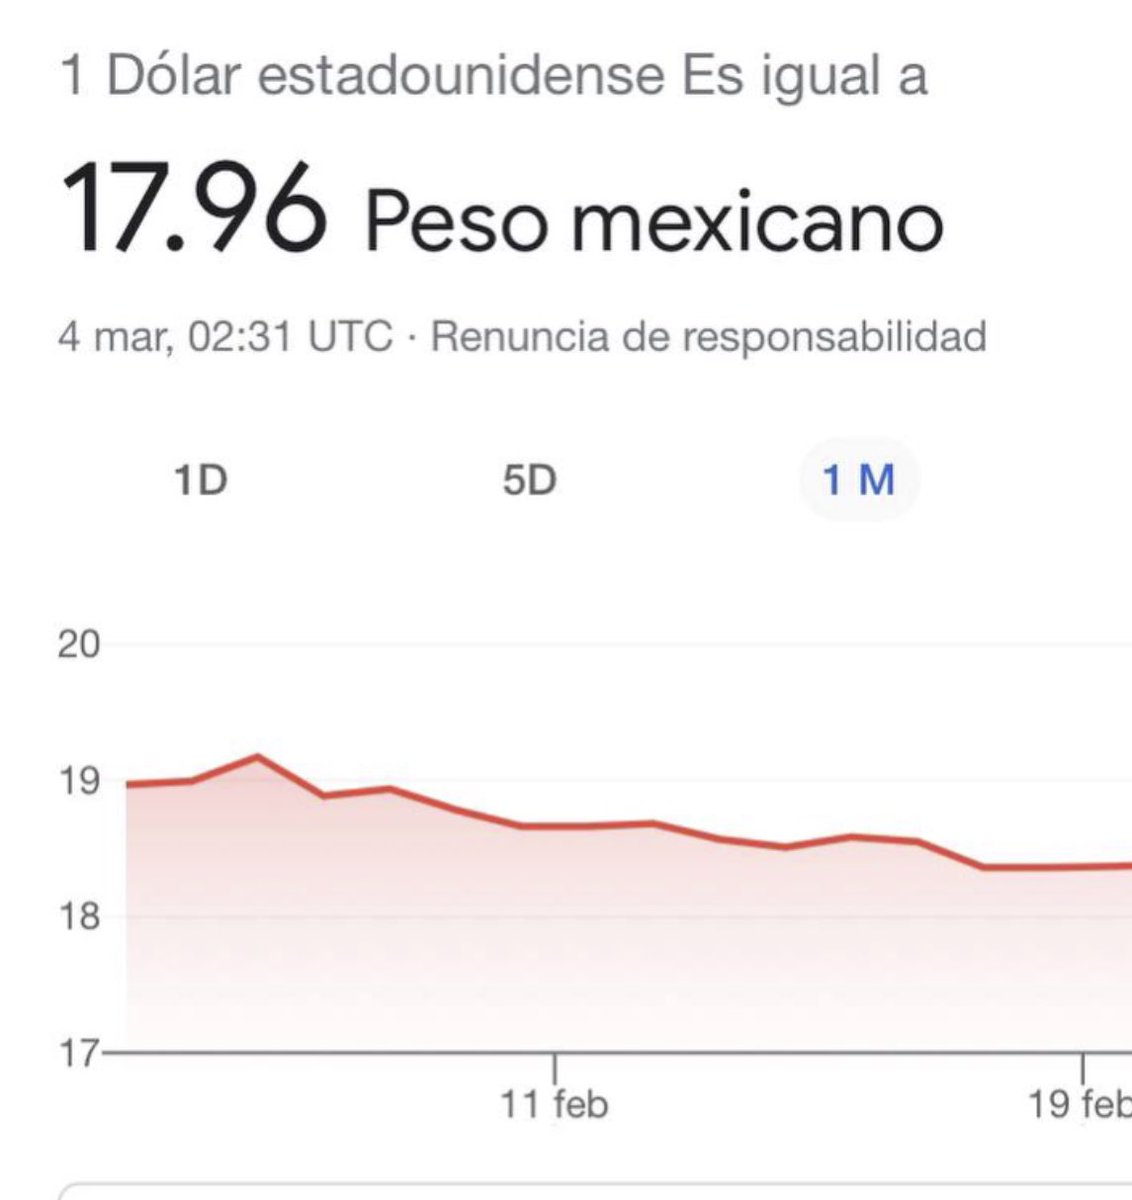 Hechos son amores y no buenas razones.Baja deuda, más ingresos, TMEC,respaldo al gobierno,eficacia para atraer inversiones.El Mercado global reconoce a AMLO y a México.